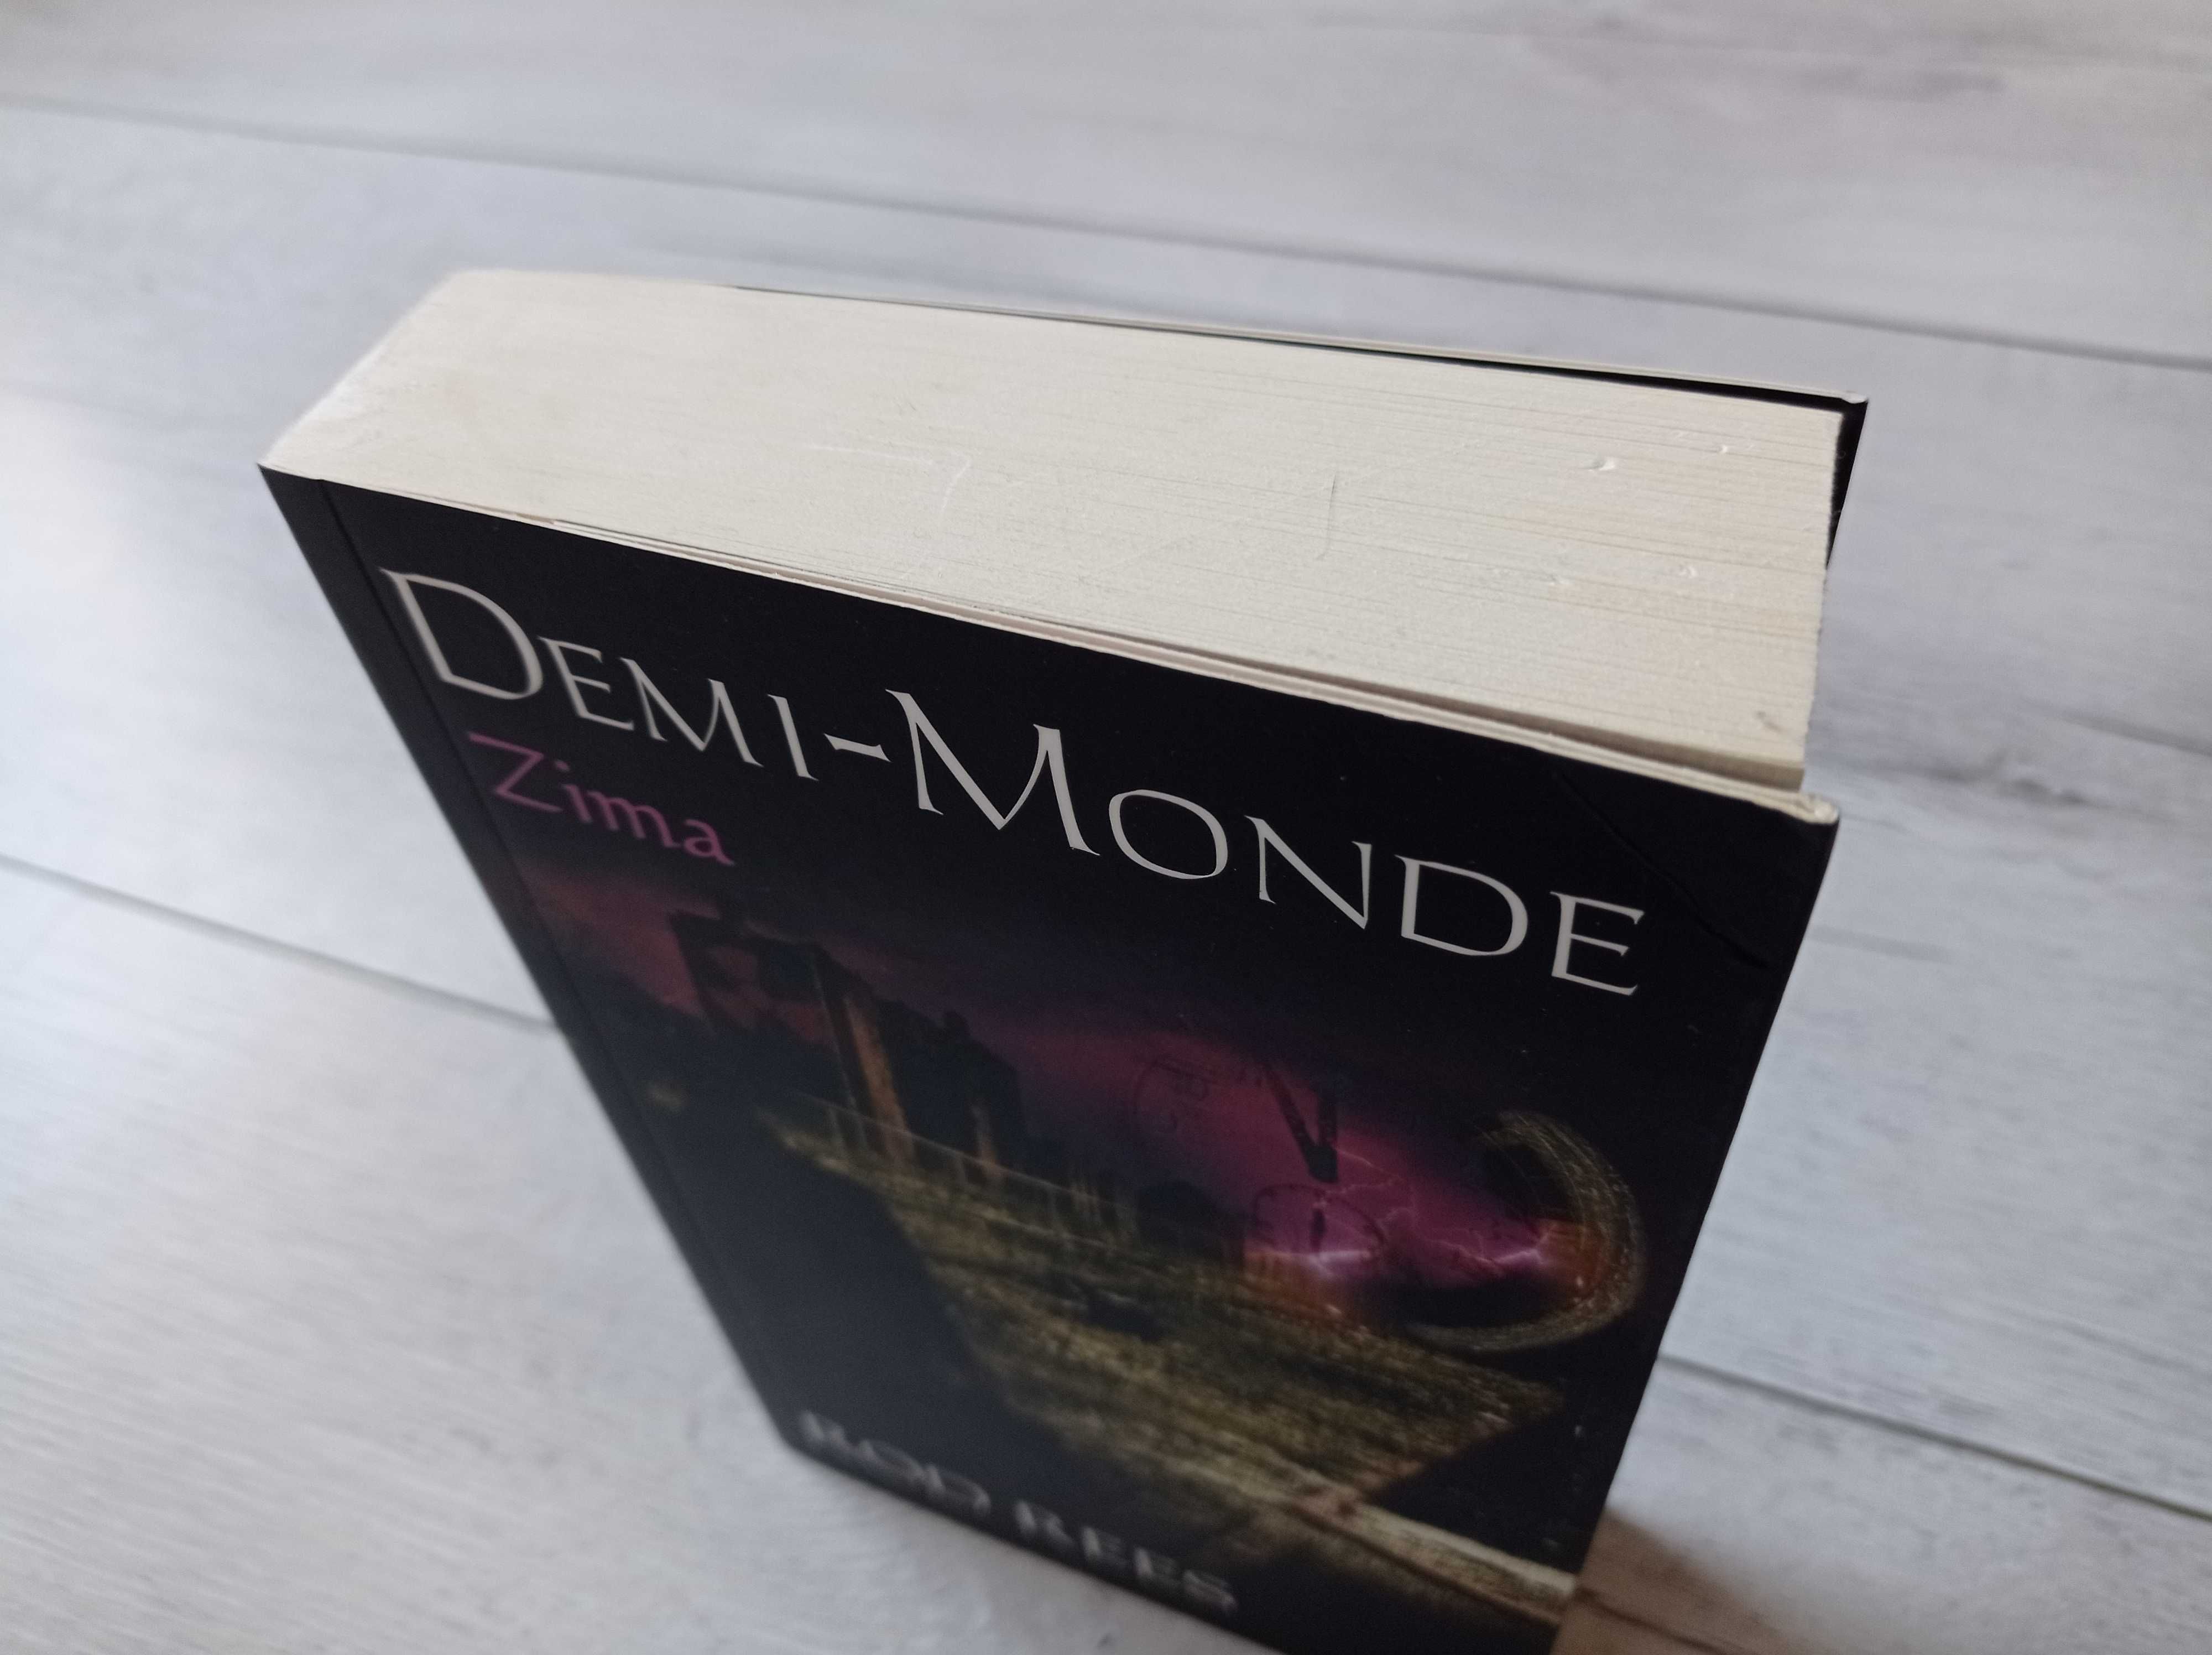 Rod Rees – Demi-Monde. Zima - książka – wyprzedaż kolekcji